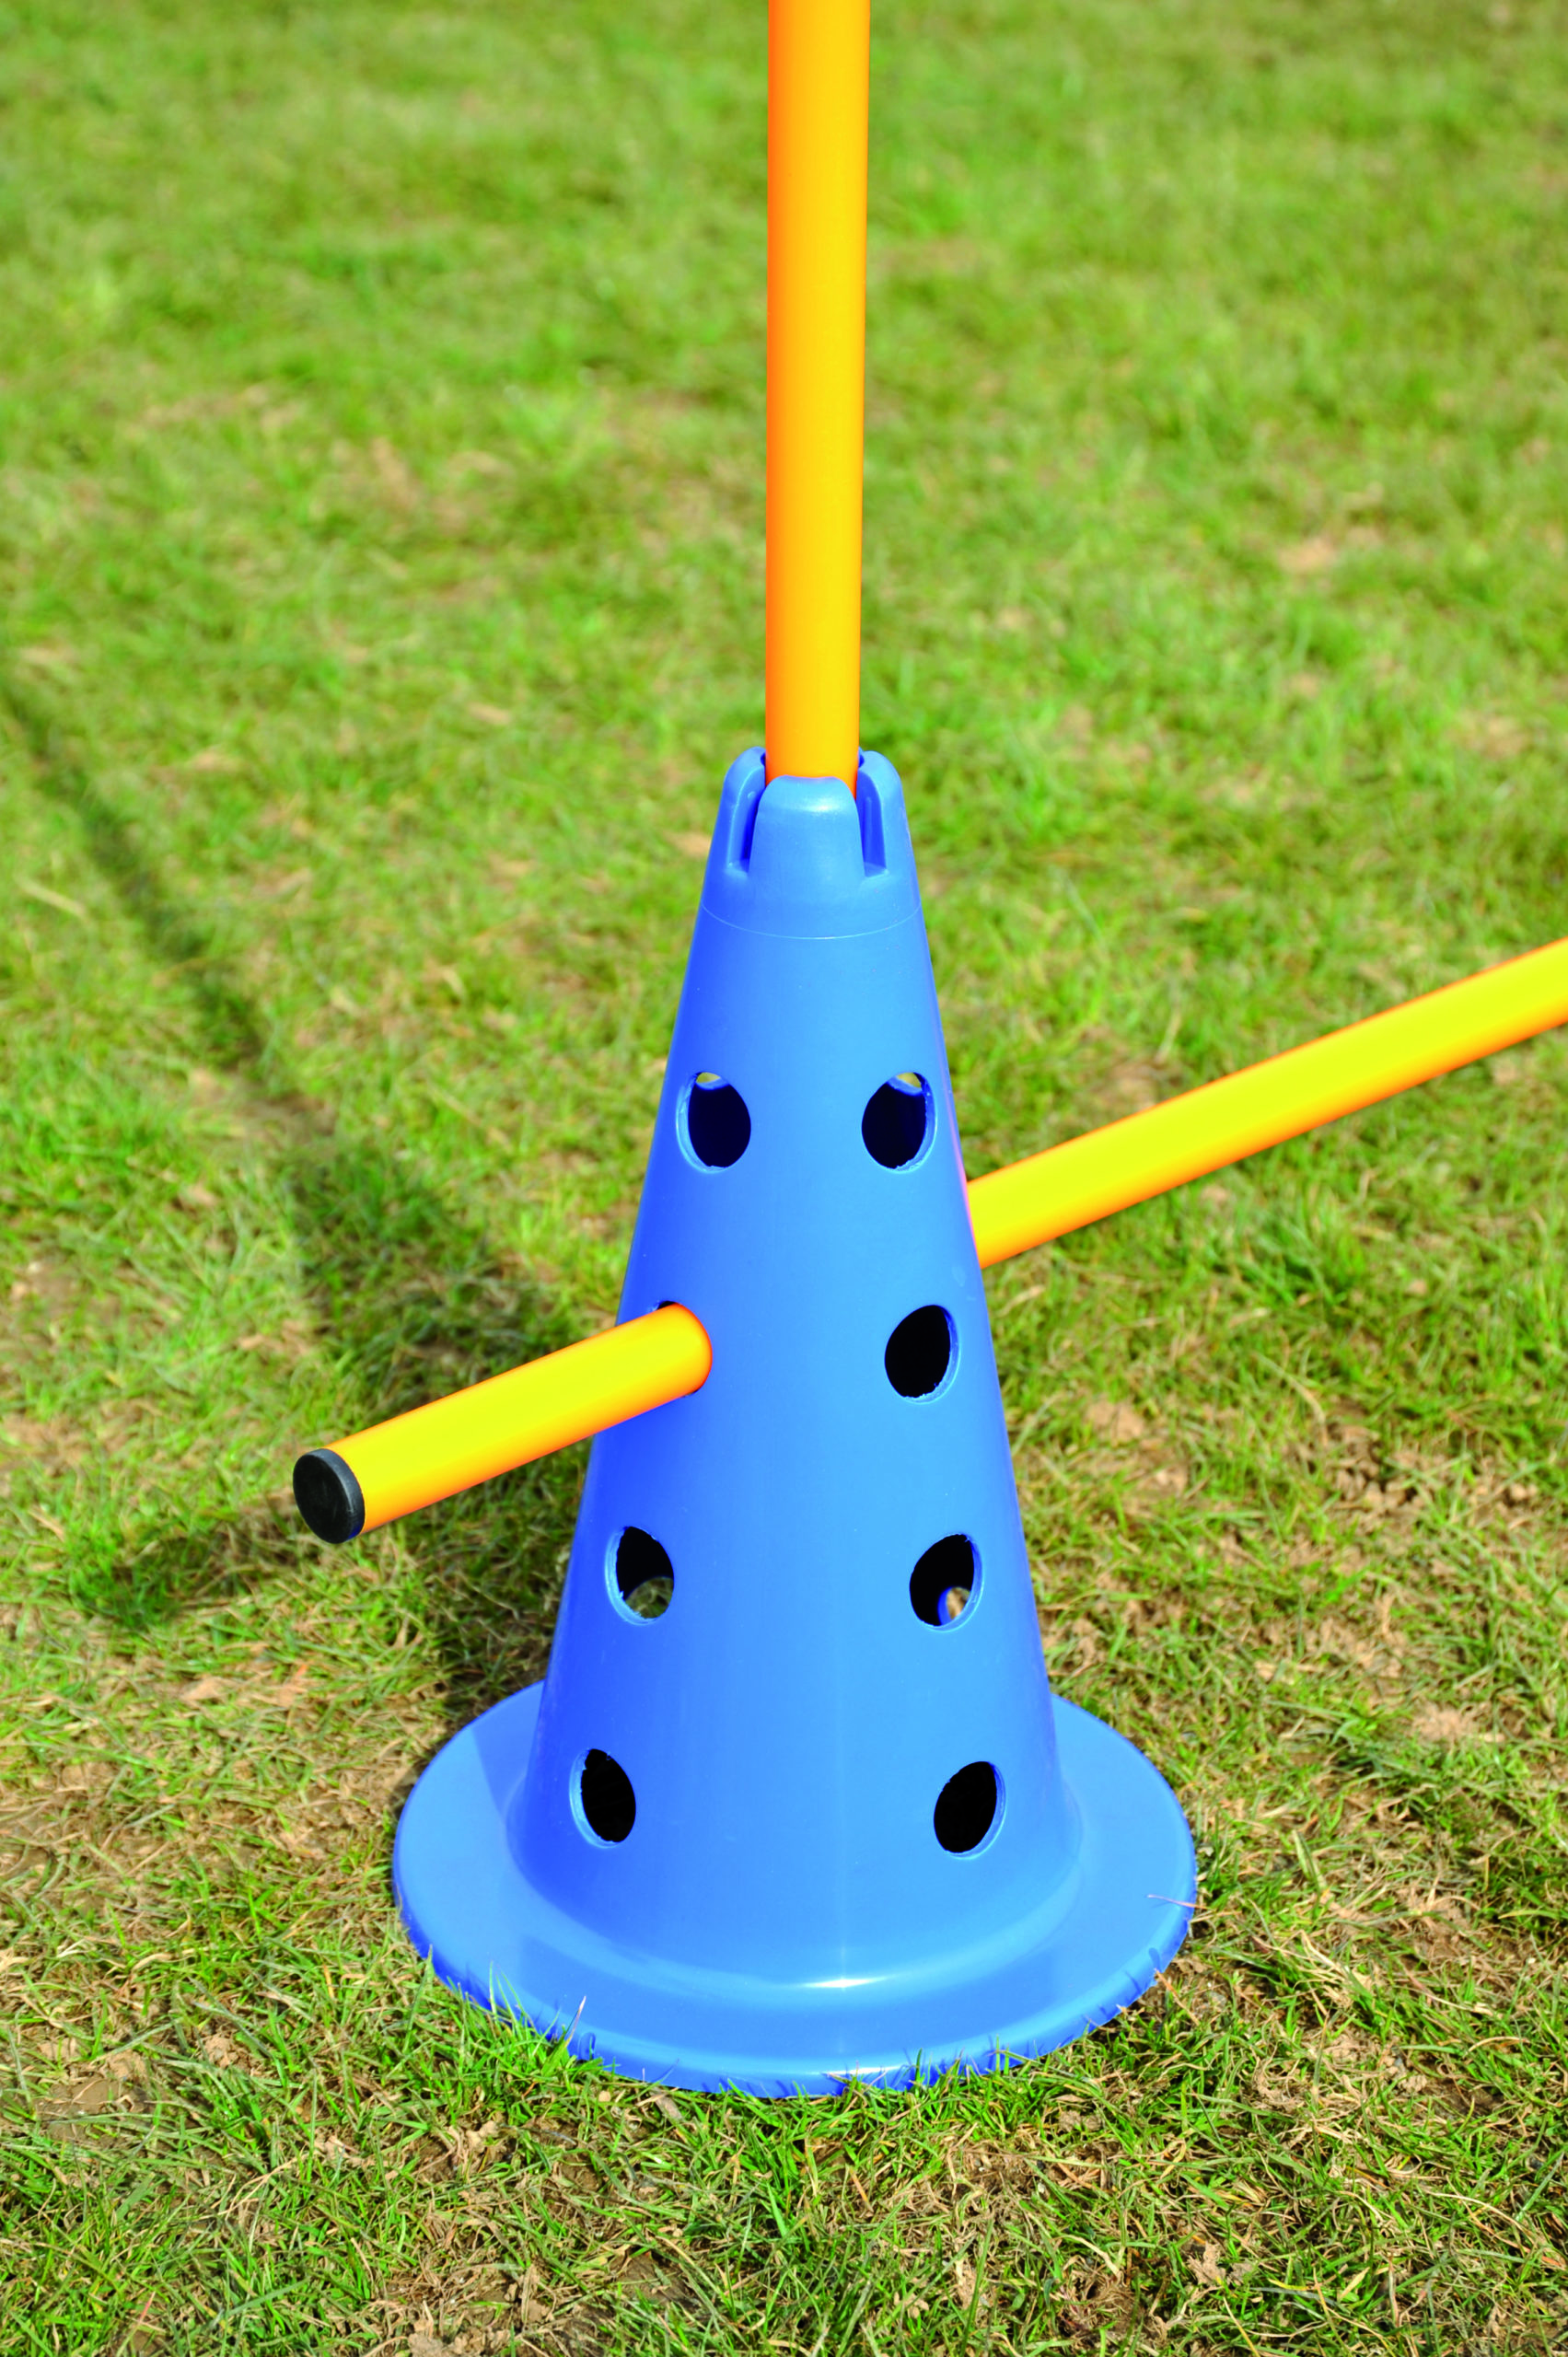 cones de sport et plots cone de sport 16 trous 50 cm avec encoche